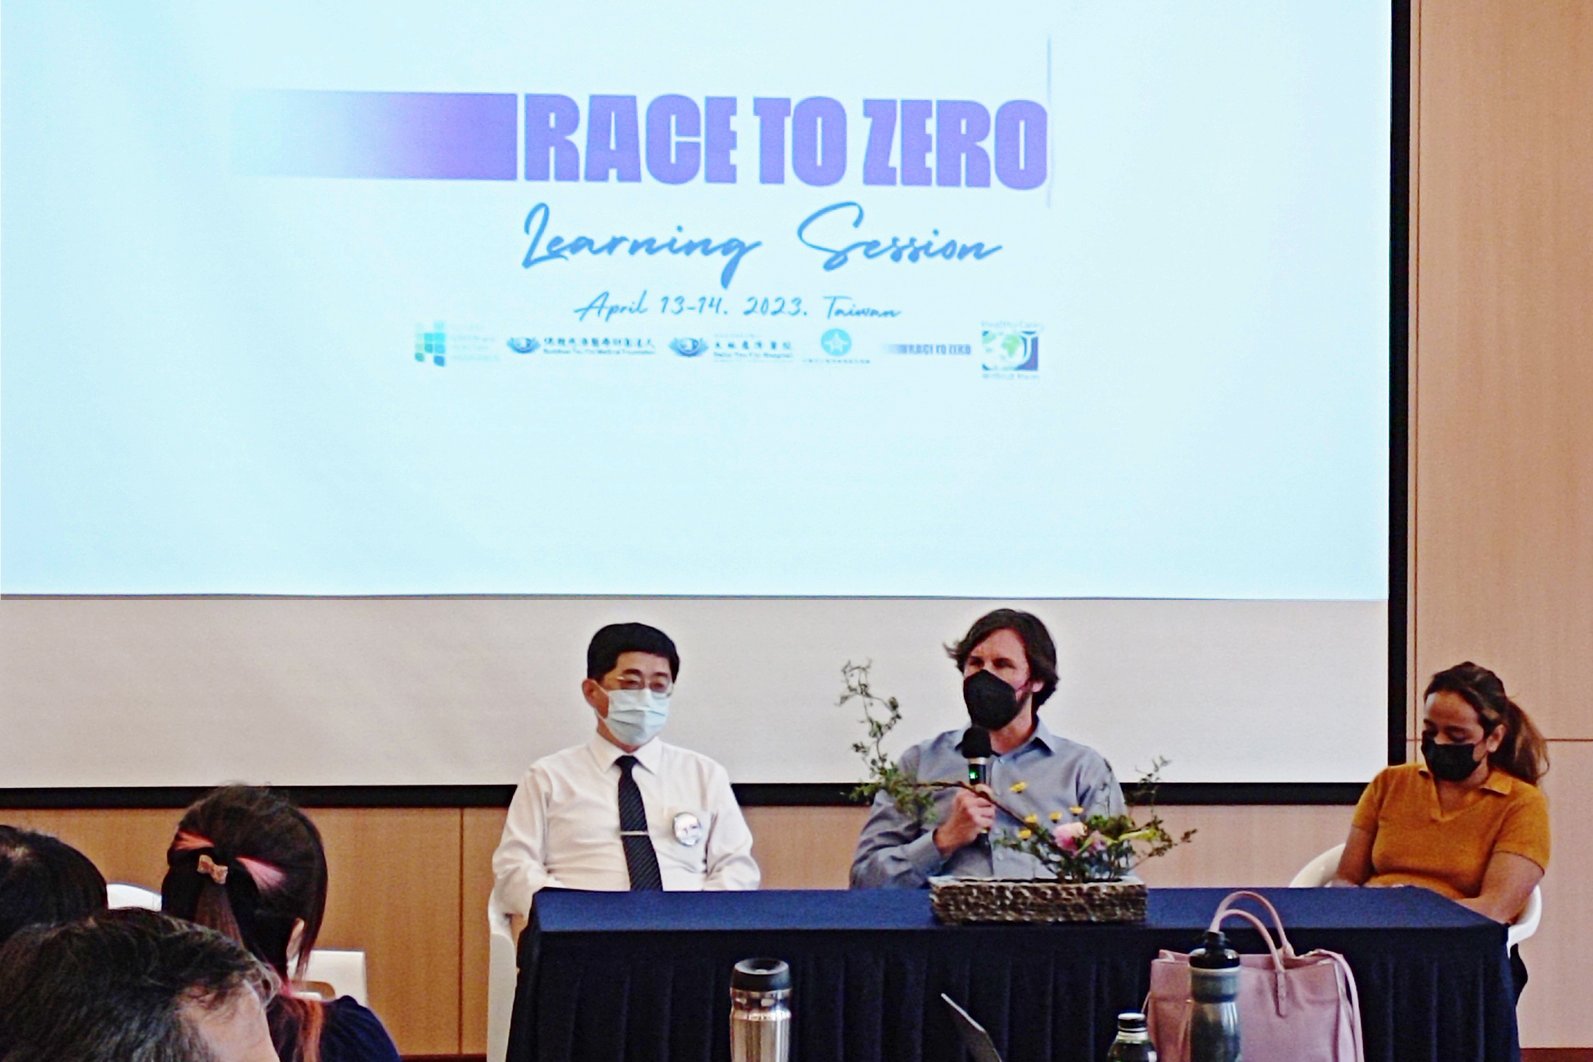 臺灣首次舉辦聯合國「Race To Zero」高峰會，針對推動醫院淨零碳排之資源盤點、擬定行動計畫以及針對醫院如何推動相關計畫進行交流學習。